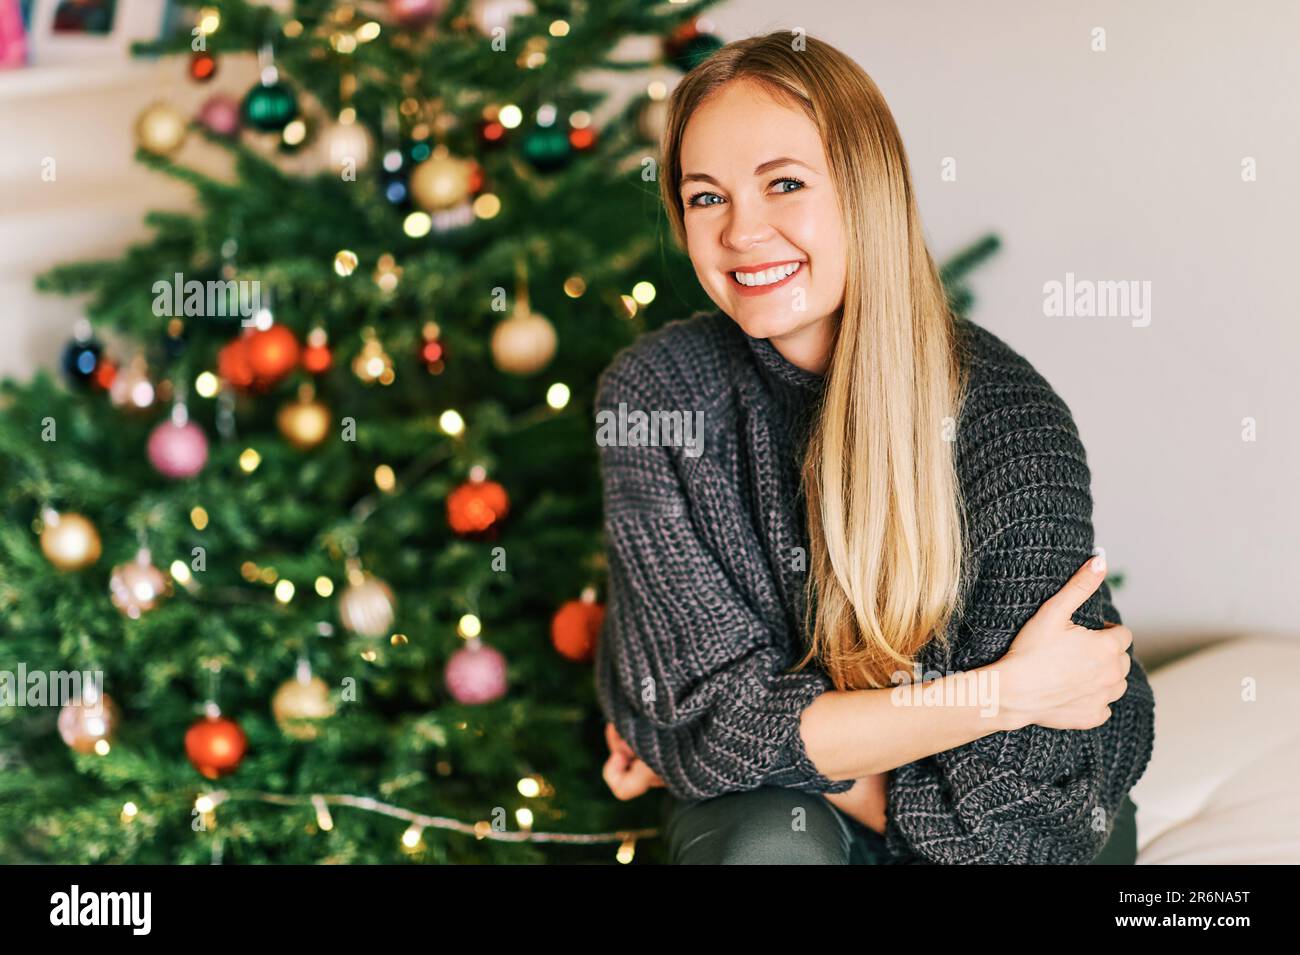 Portrait de Noël d'une belle femme heureuse portant un pull-over chaud et confortable Banque D'Images